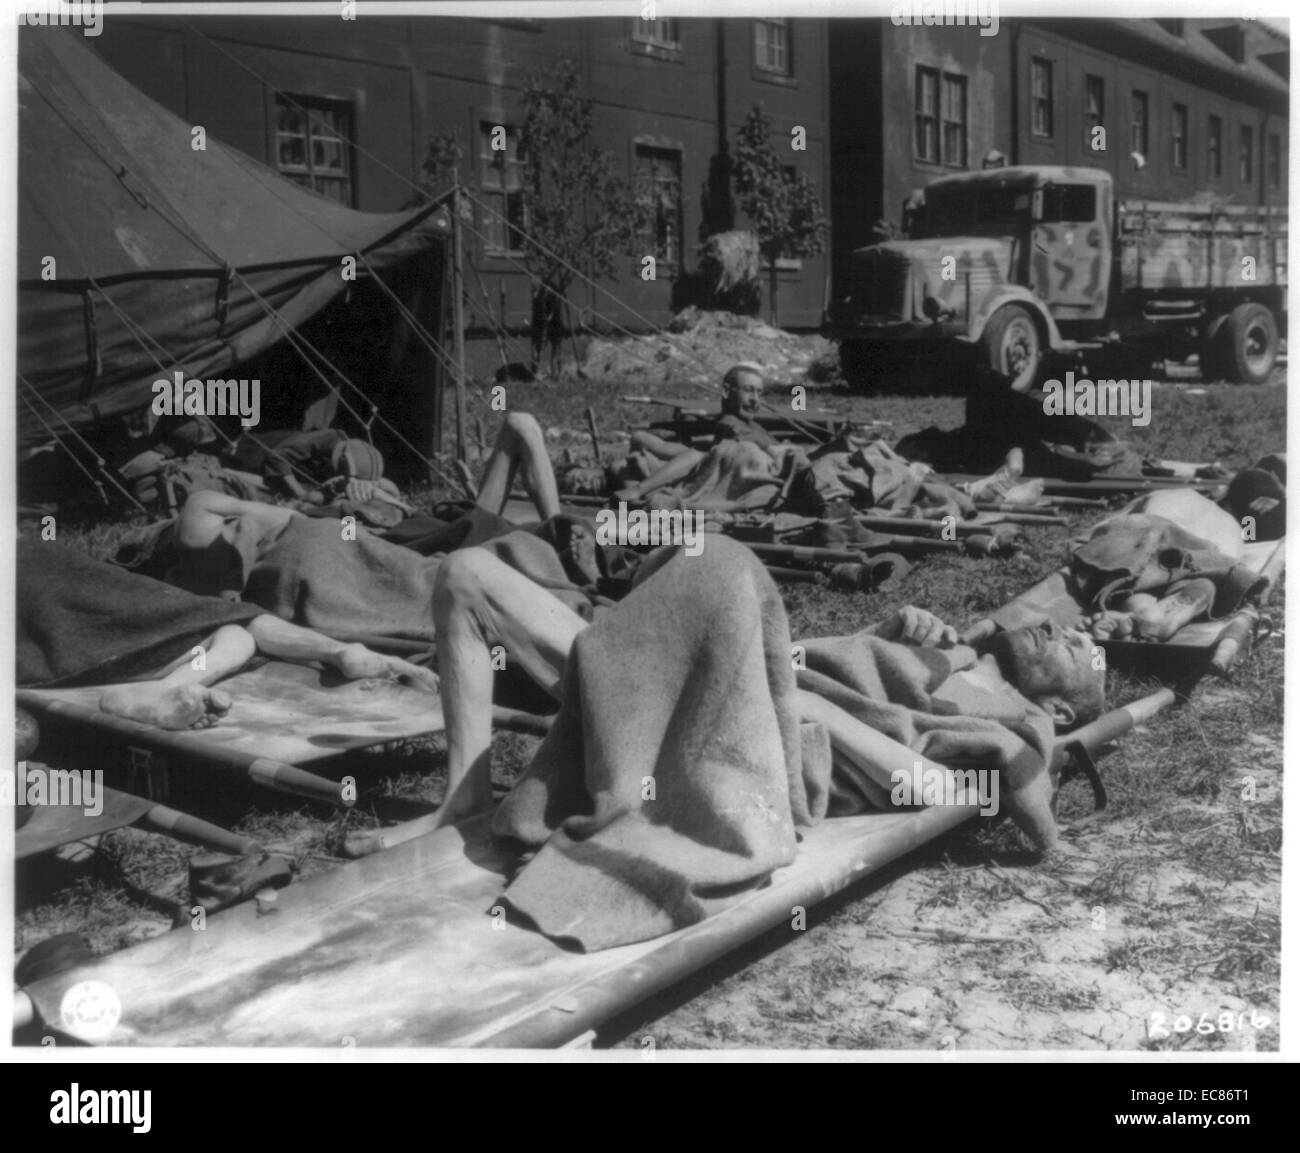 Fotografia di ebrei ungheresi dopo la rimozione dai campi di concentramento nazisti per servizi forniti da US Army in Austria. Datata 1945 Foto Stock